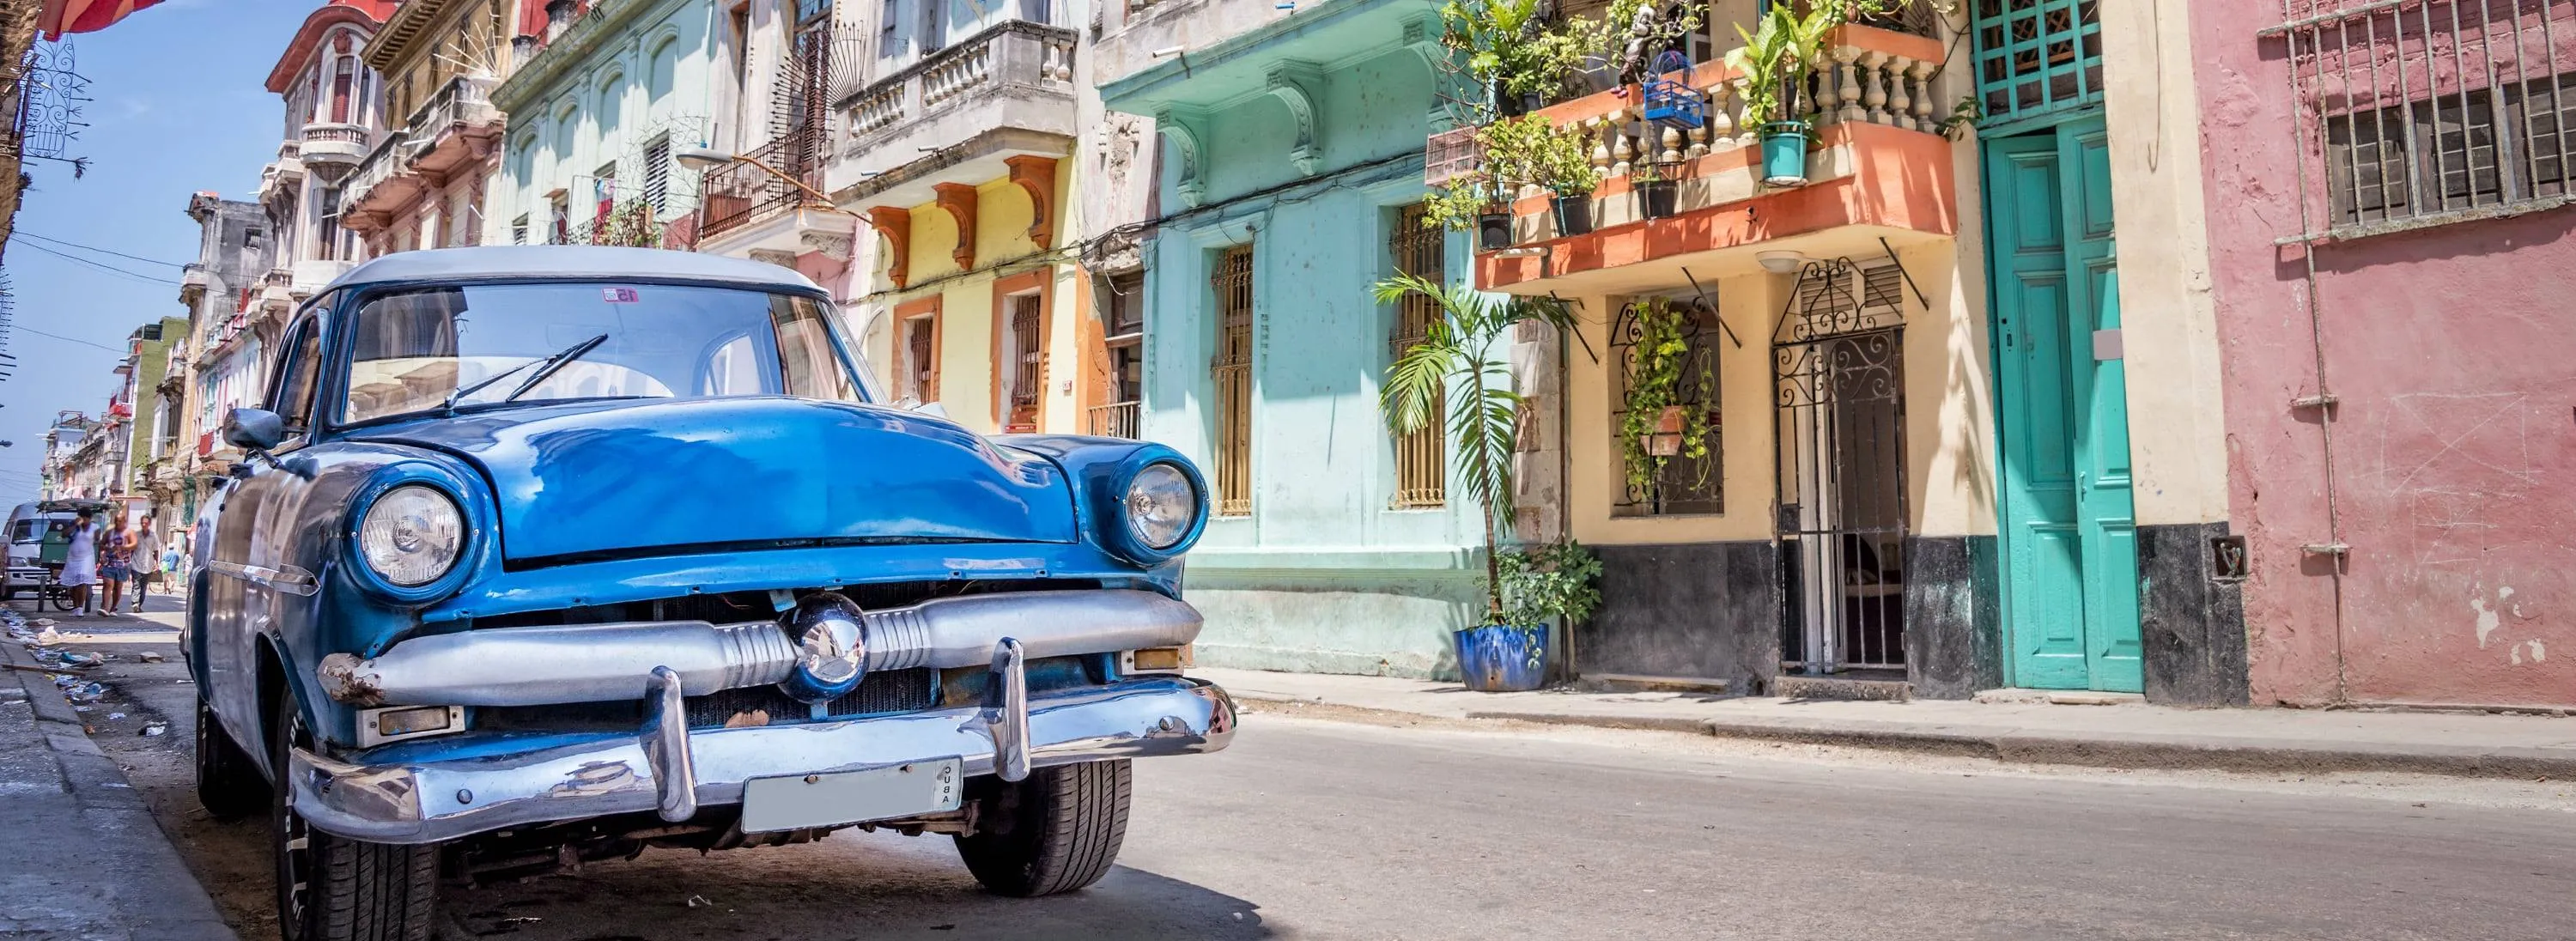 Havanna - ajaloopärandi pealinn Kuubas - ReisiGuru.ee